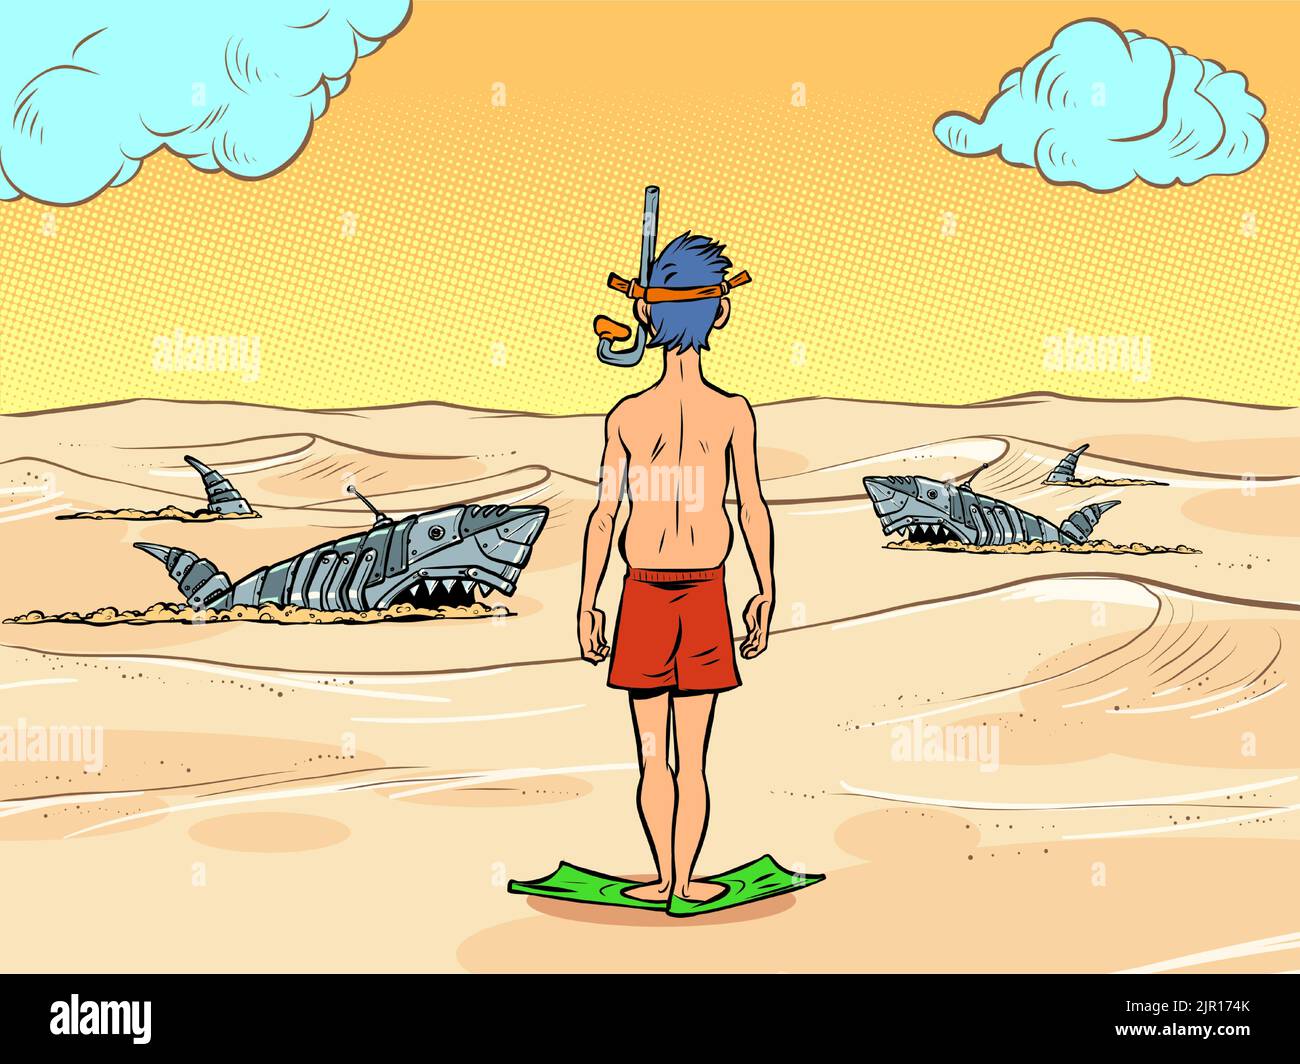 Un turista en la orilla de un desierto del mar de arena. Tiburones mecánicos peligrosos nadan en la arena Ilustración del Vector